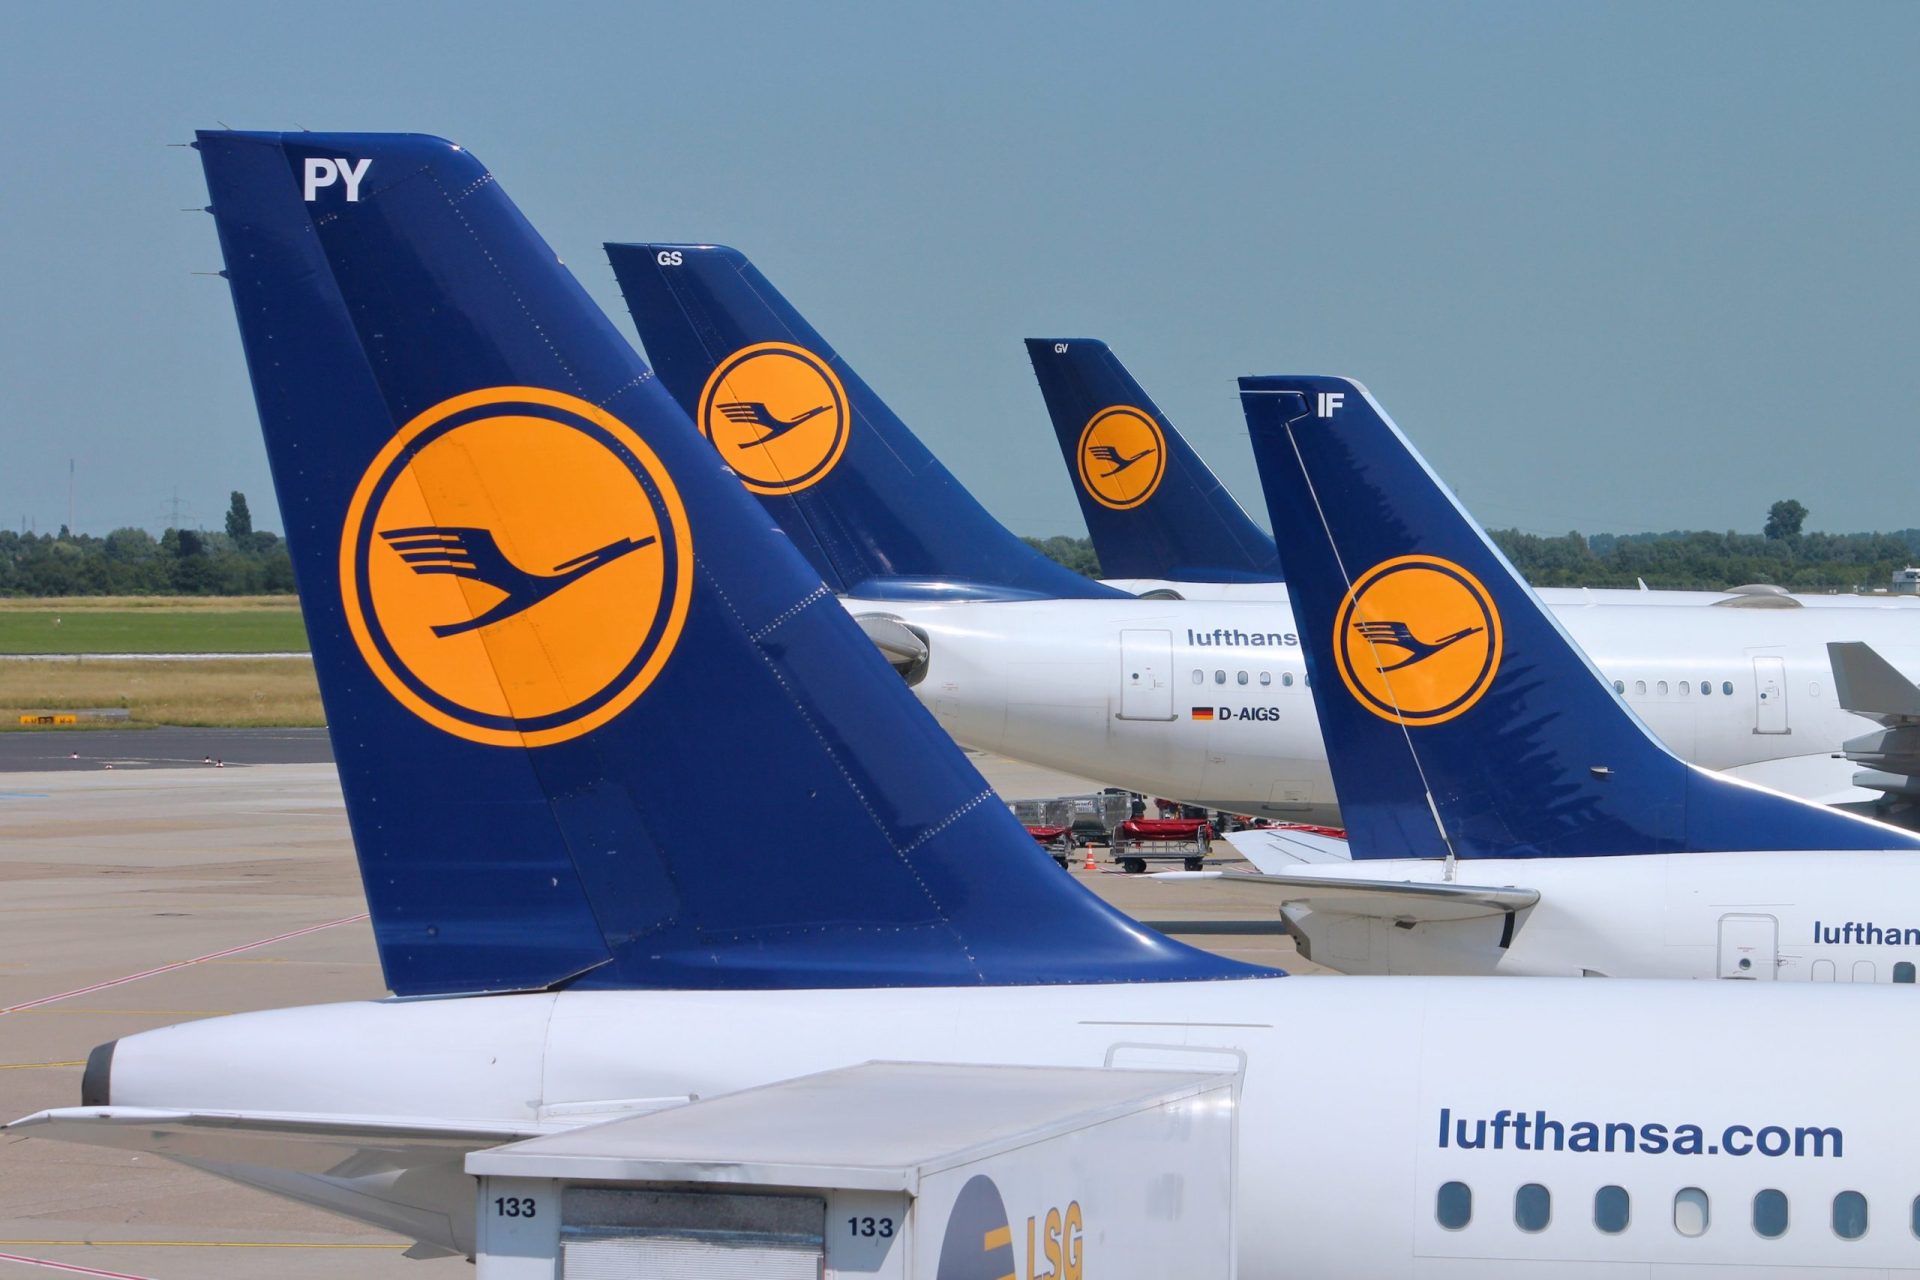 Voo da Lufthansa entre Frankfurt e Lisboa cancelado devido a greve